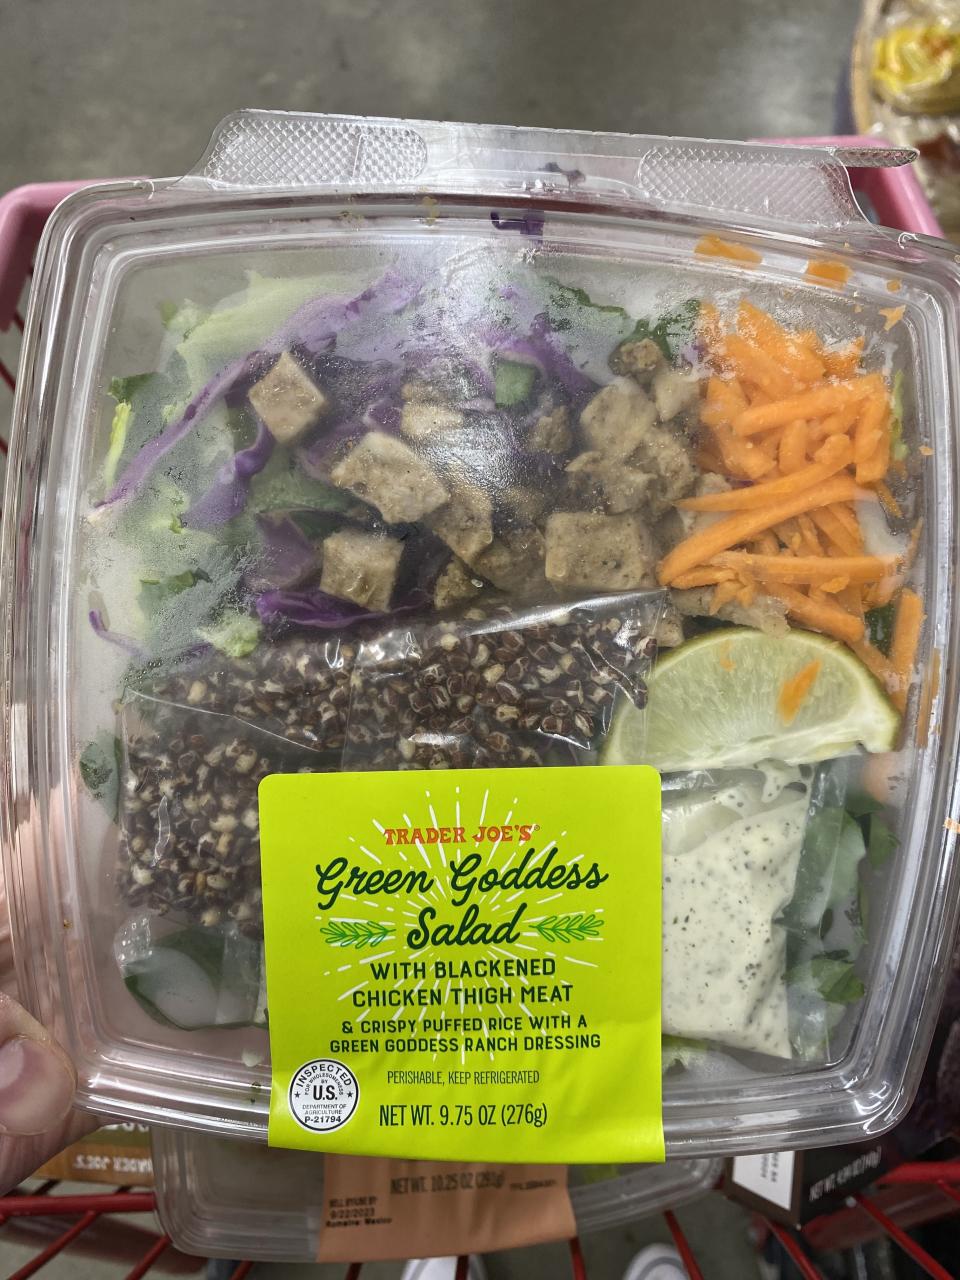 a package of trader joe's green goddess salad